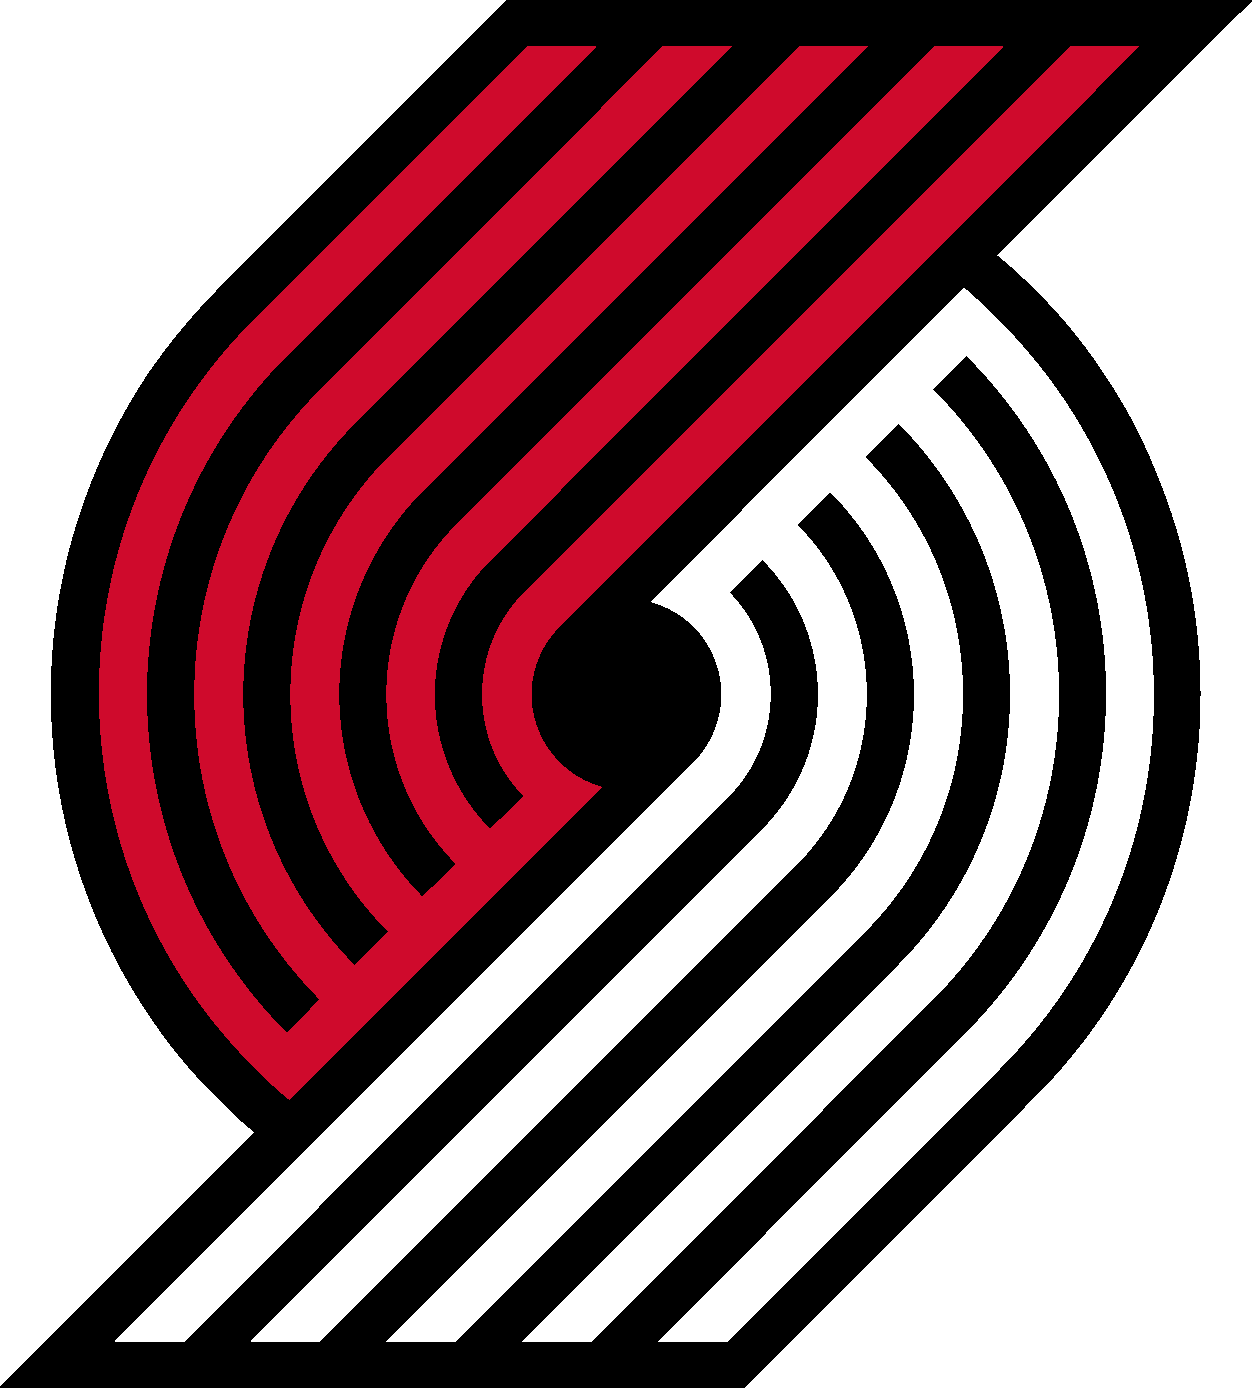 Portland Trail Blazers Logo (NBA) png